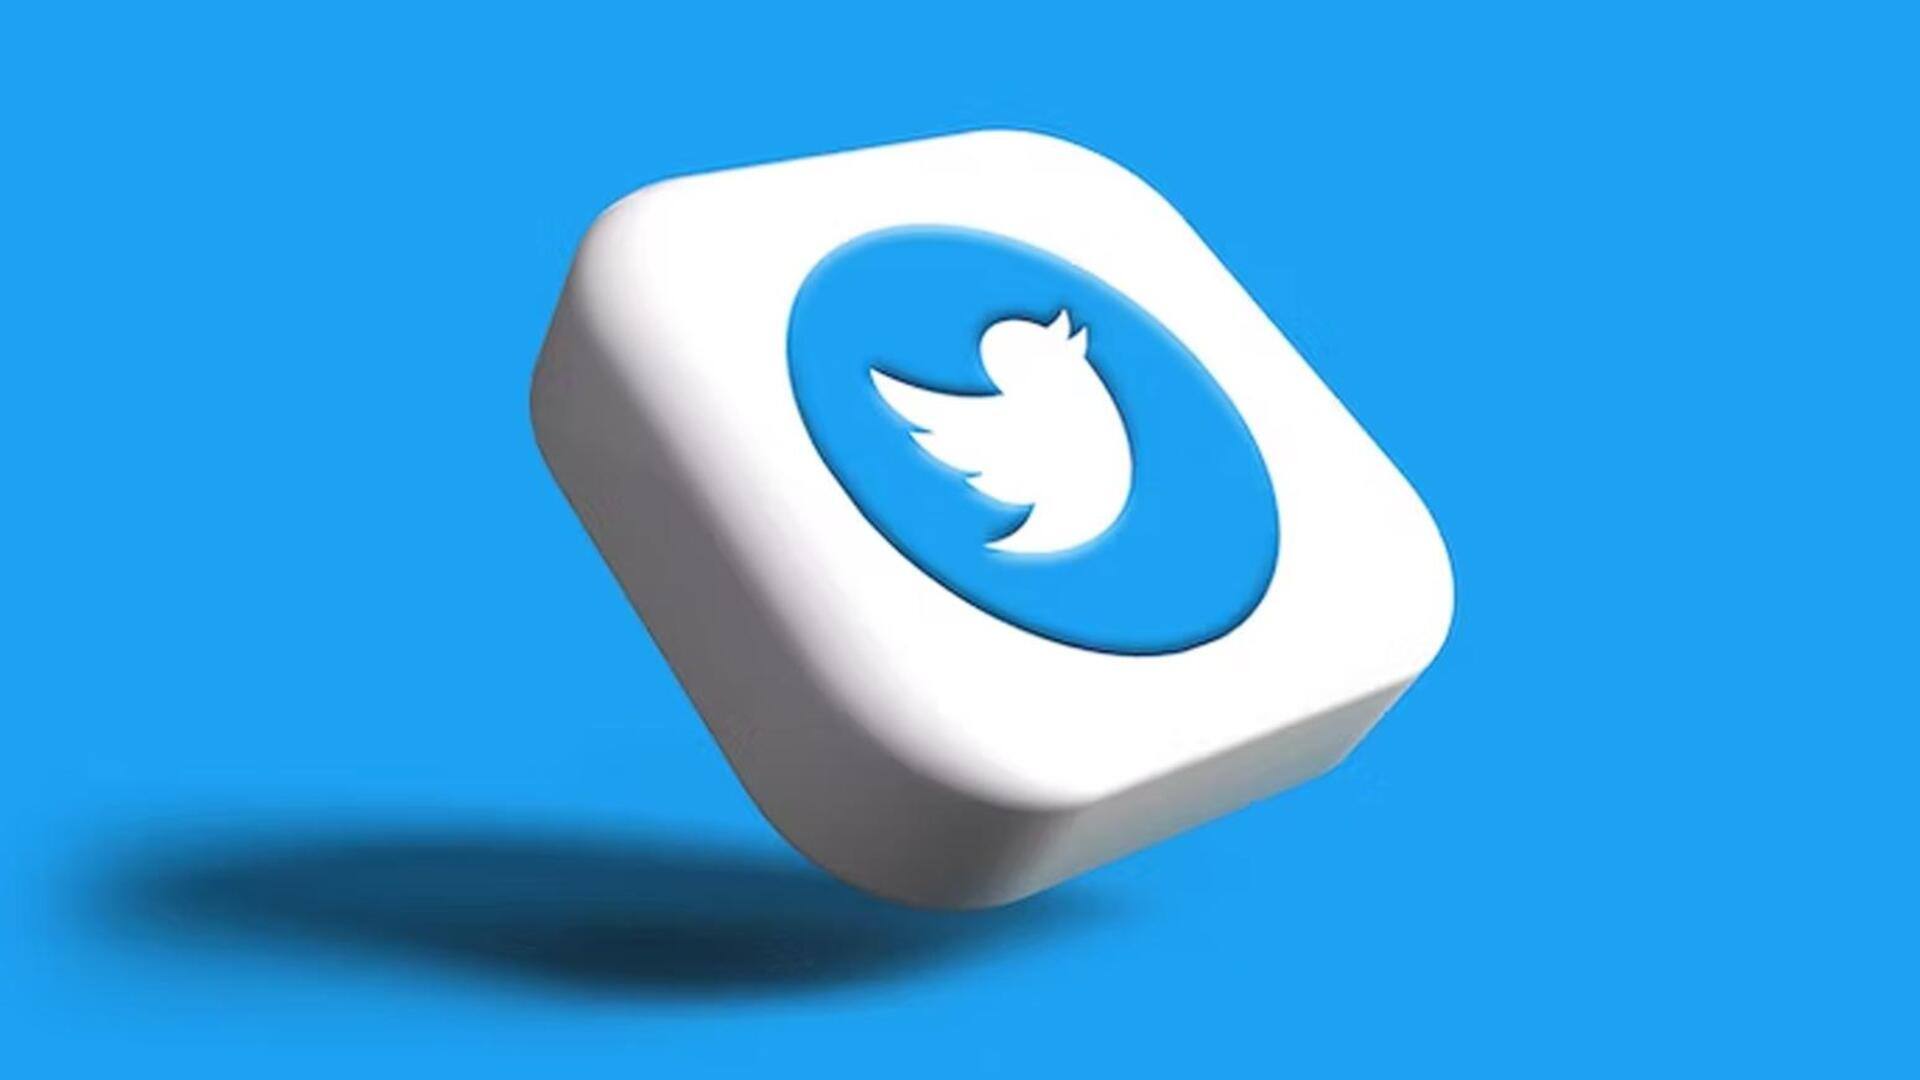 ट्विटर ने सबस्टैक पोस्ट में ट्वीट एम्बेड करने पर लगाया प्रतिबंध, लेखकों के लिए बढ़ी समस्या